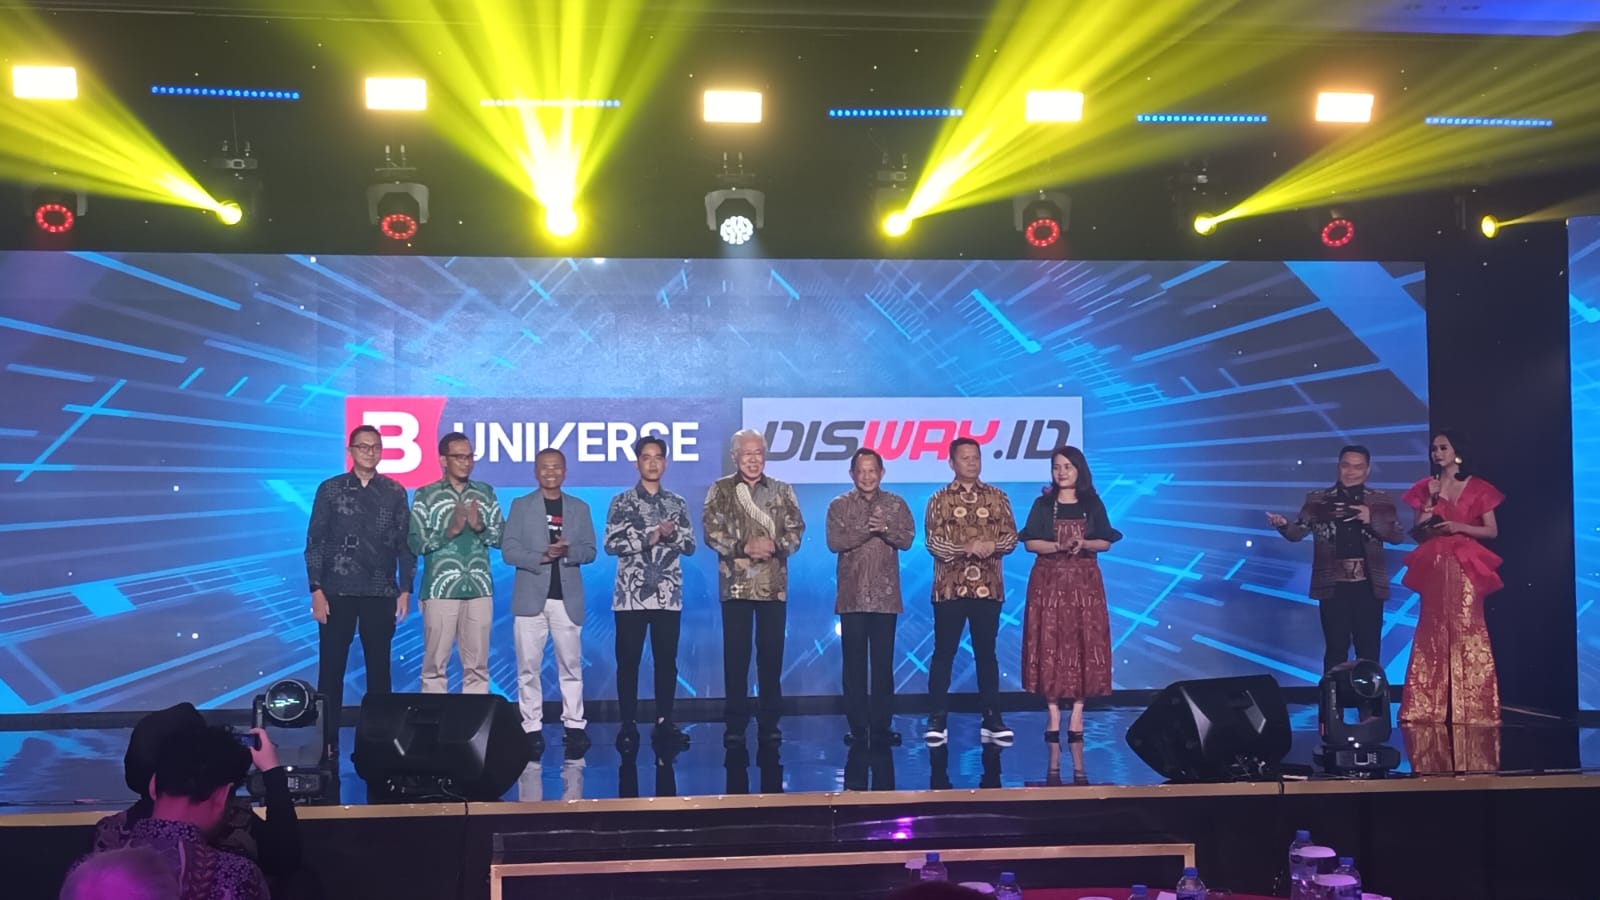 Resmi Jalin Kerja Sama, B-Universe Dan Disway Targertkan 400 Media Network